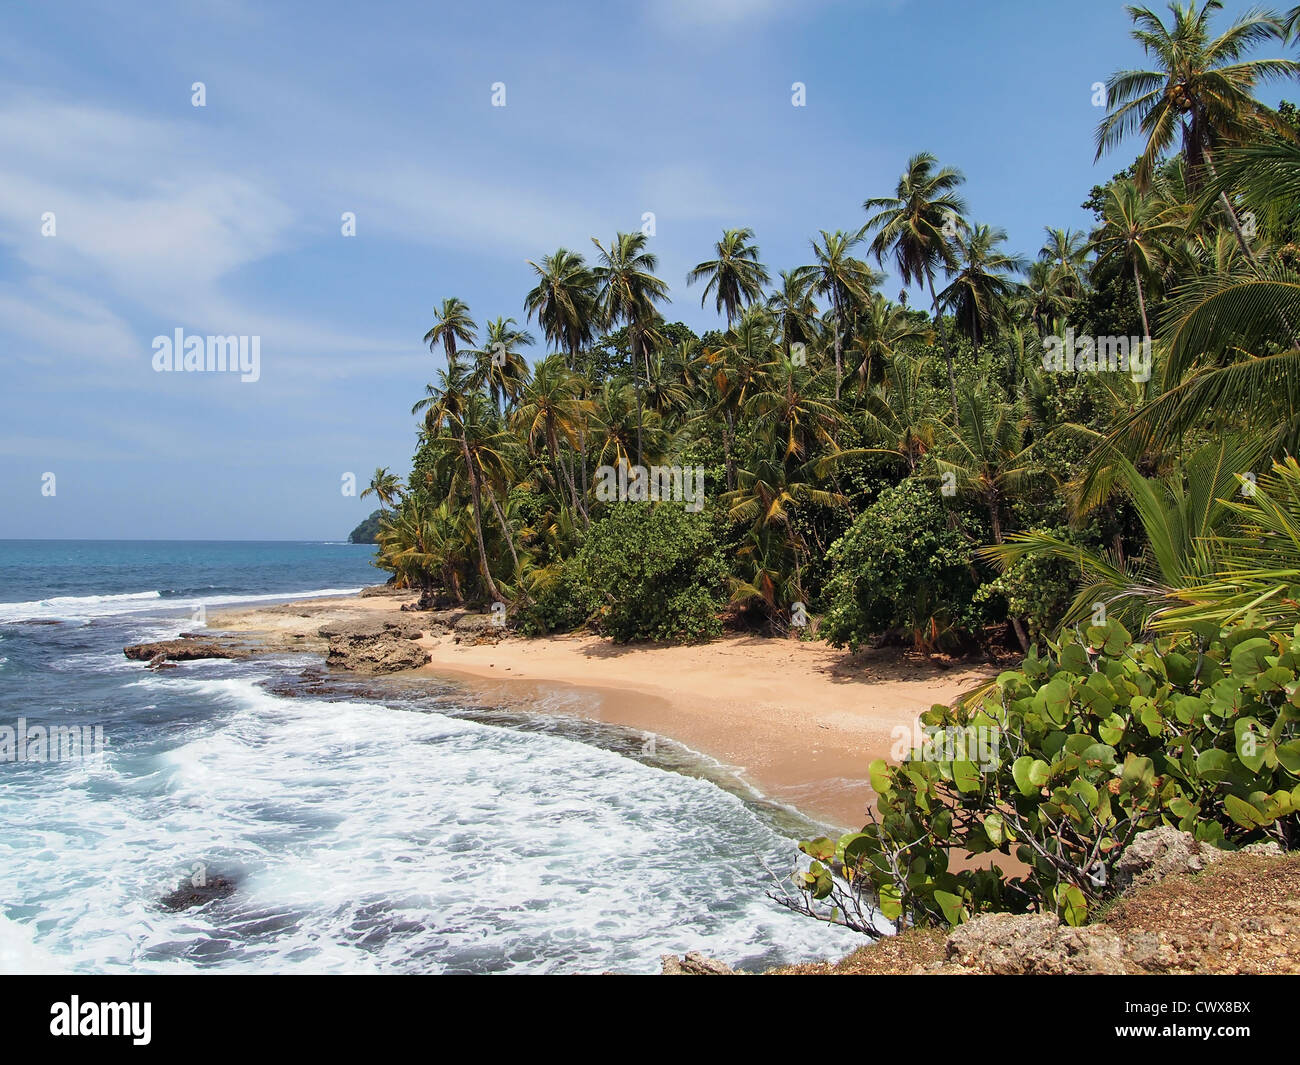 La spiaggia incontaminata con vegetazione lussureggiante, costa caraibica del Costa Rica Foto Stock